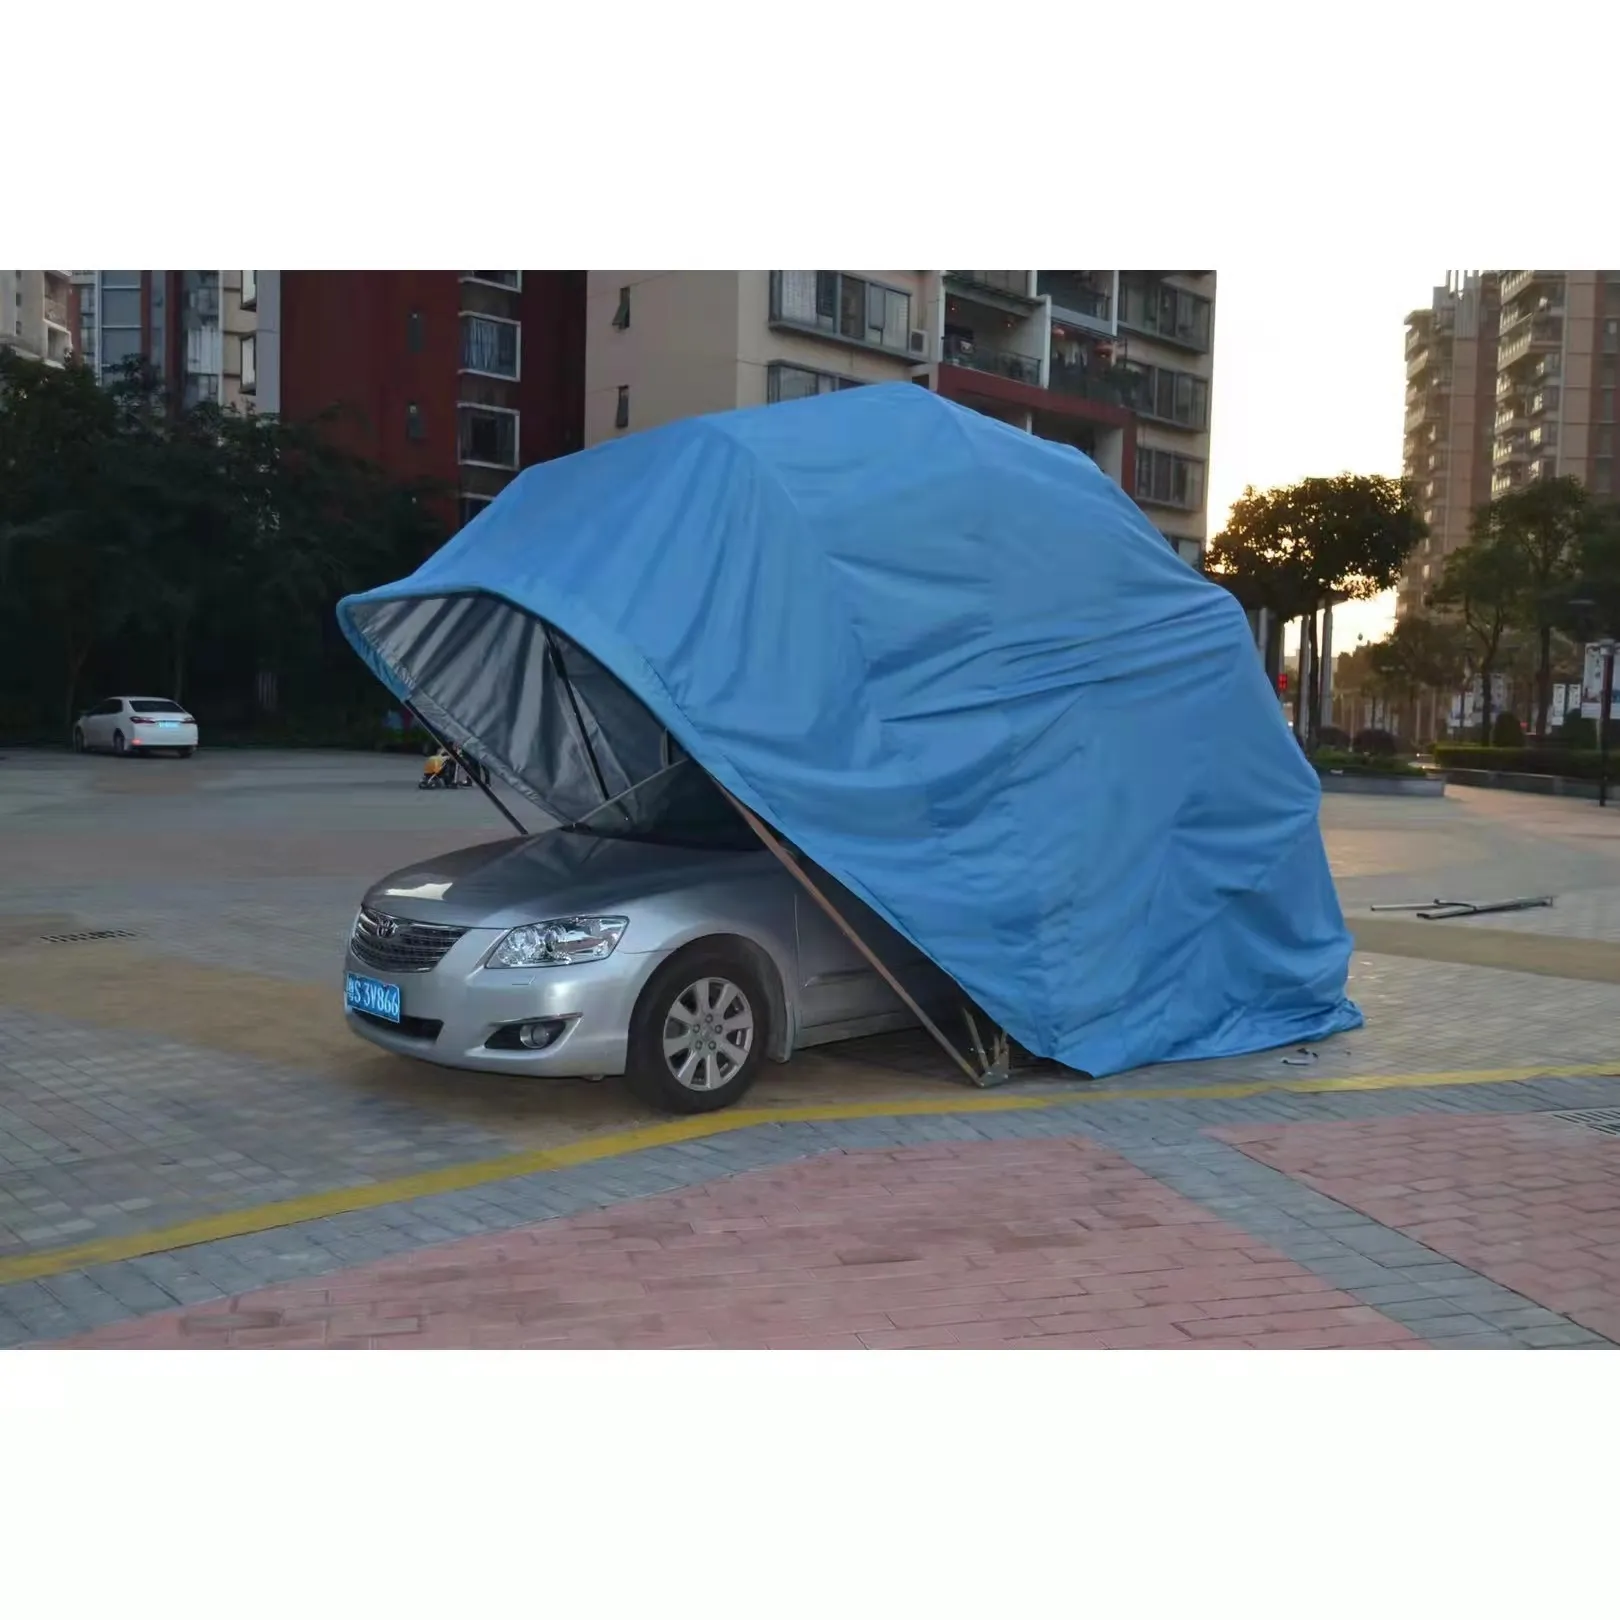 Youya-coche plegable de alta calidad, garaje al por mayor, fabricante para refugio y tienda de campaña